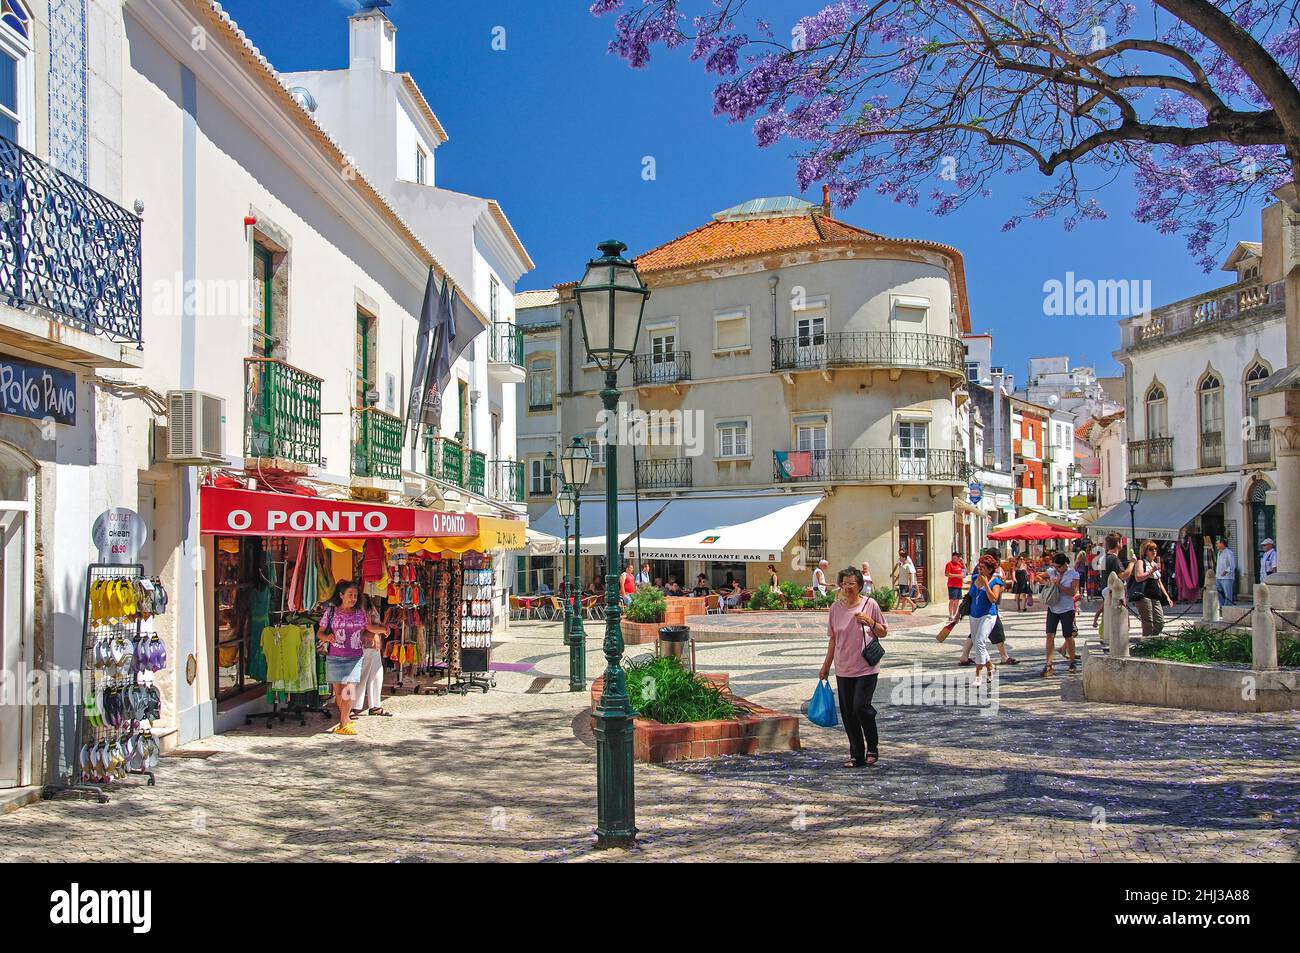 Praca Luis de Camoes, Lagos, Algarve Region, Portugal Stock Photo